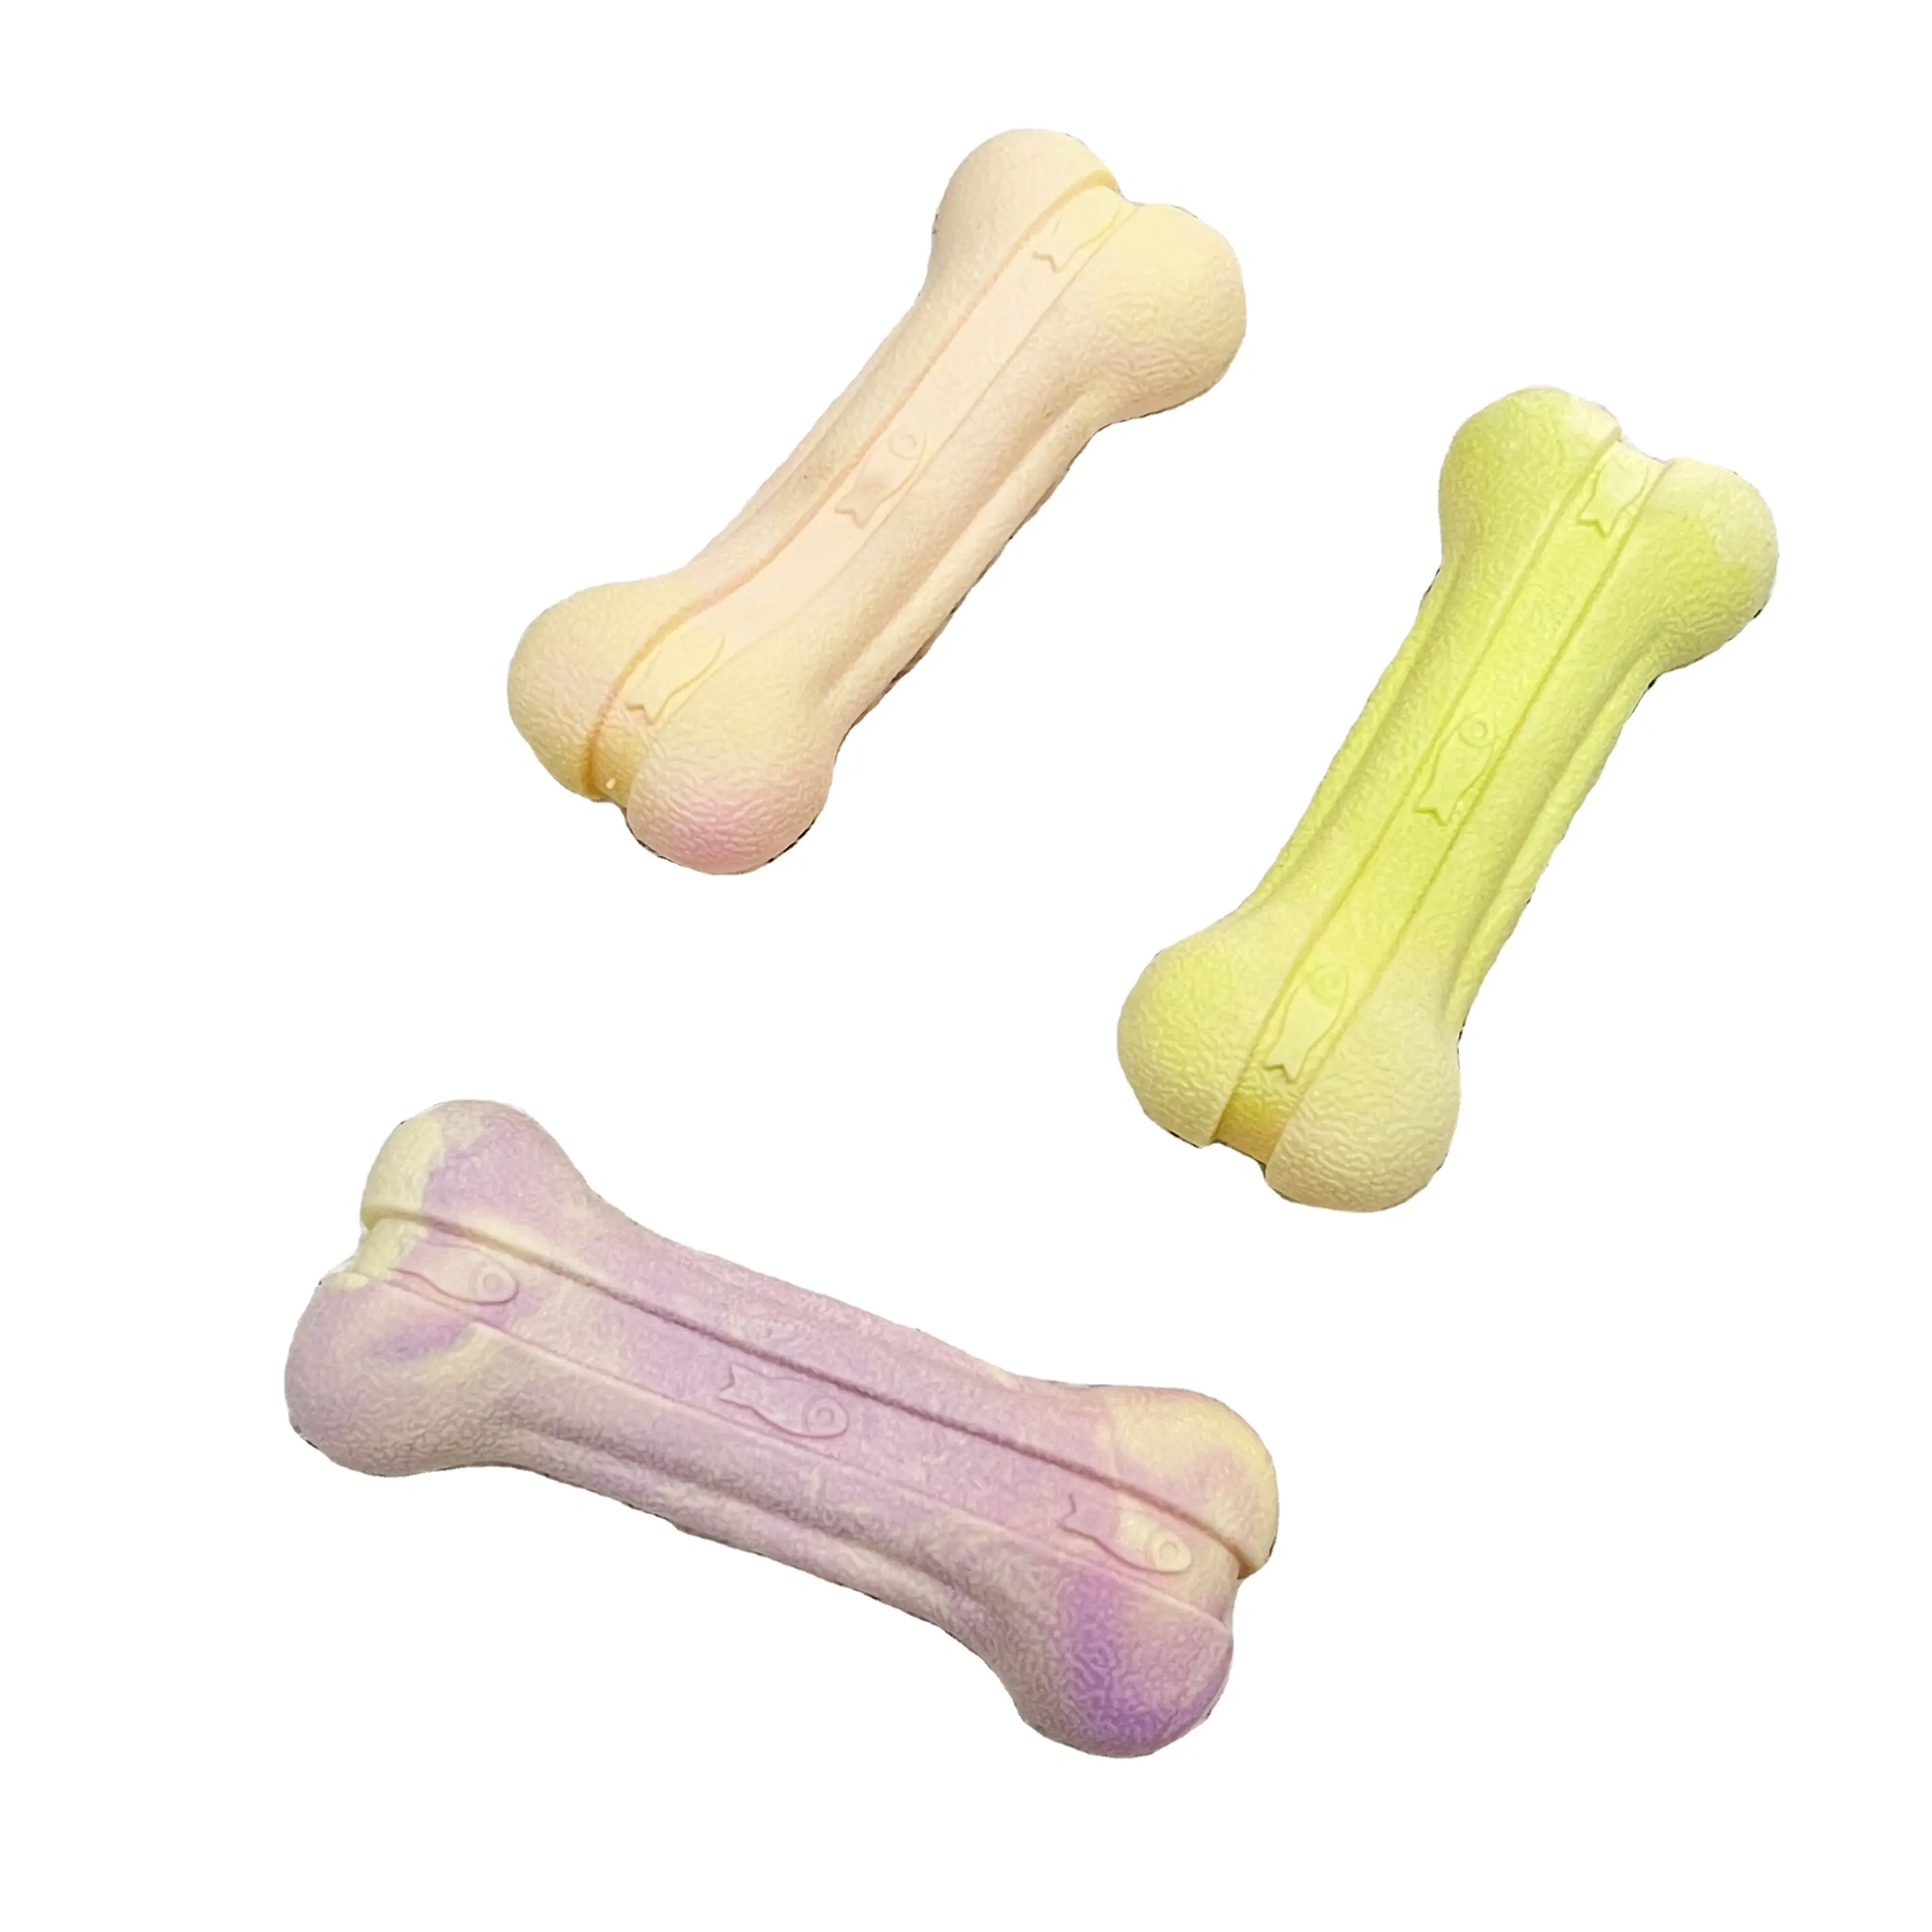 Kustom baru campur warna Tpr latihan mengunyah mainan hewan peliharaan tumbuh gigi bentuk tulang kunyah interaktif perekat tidak bisa hancur mainan